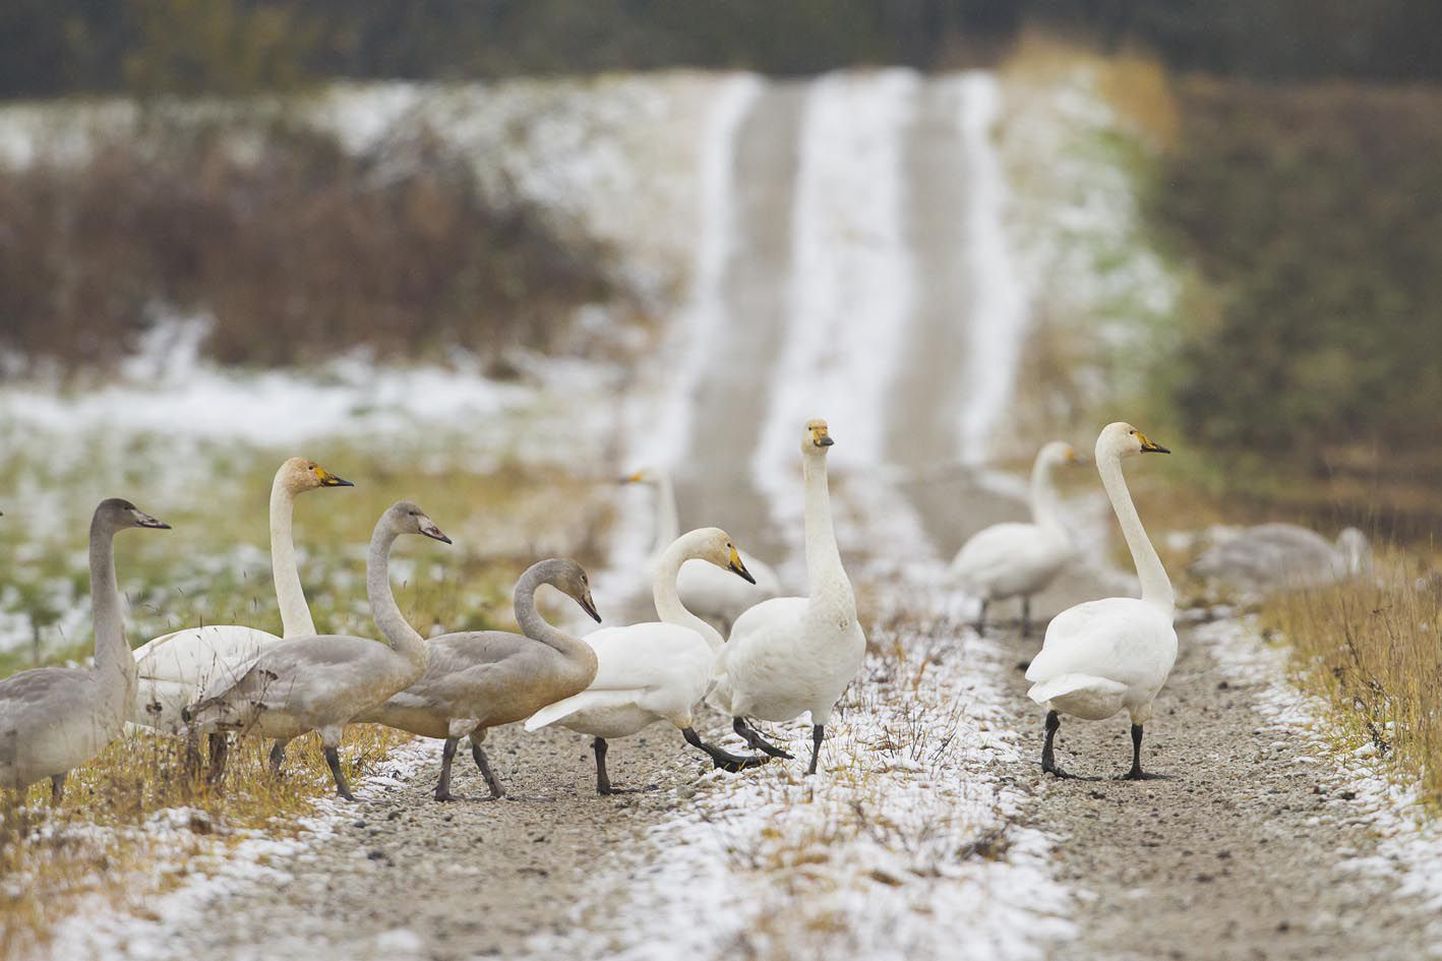 Suur osa laululuikedest rändab esimese lumega Lääne-Euroopasse. Teised jäävad siia, ujuvad jäävabadel jõelõikudel ja käivad soojadel talvedel põldudel. Osa neist on kohalikud linnud, kes on paaril viimasel aastakümnel asunud Eestisse pesitsema.